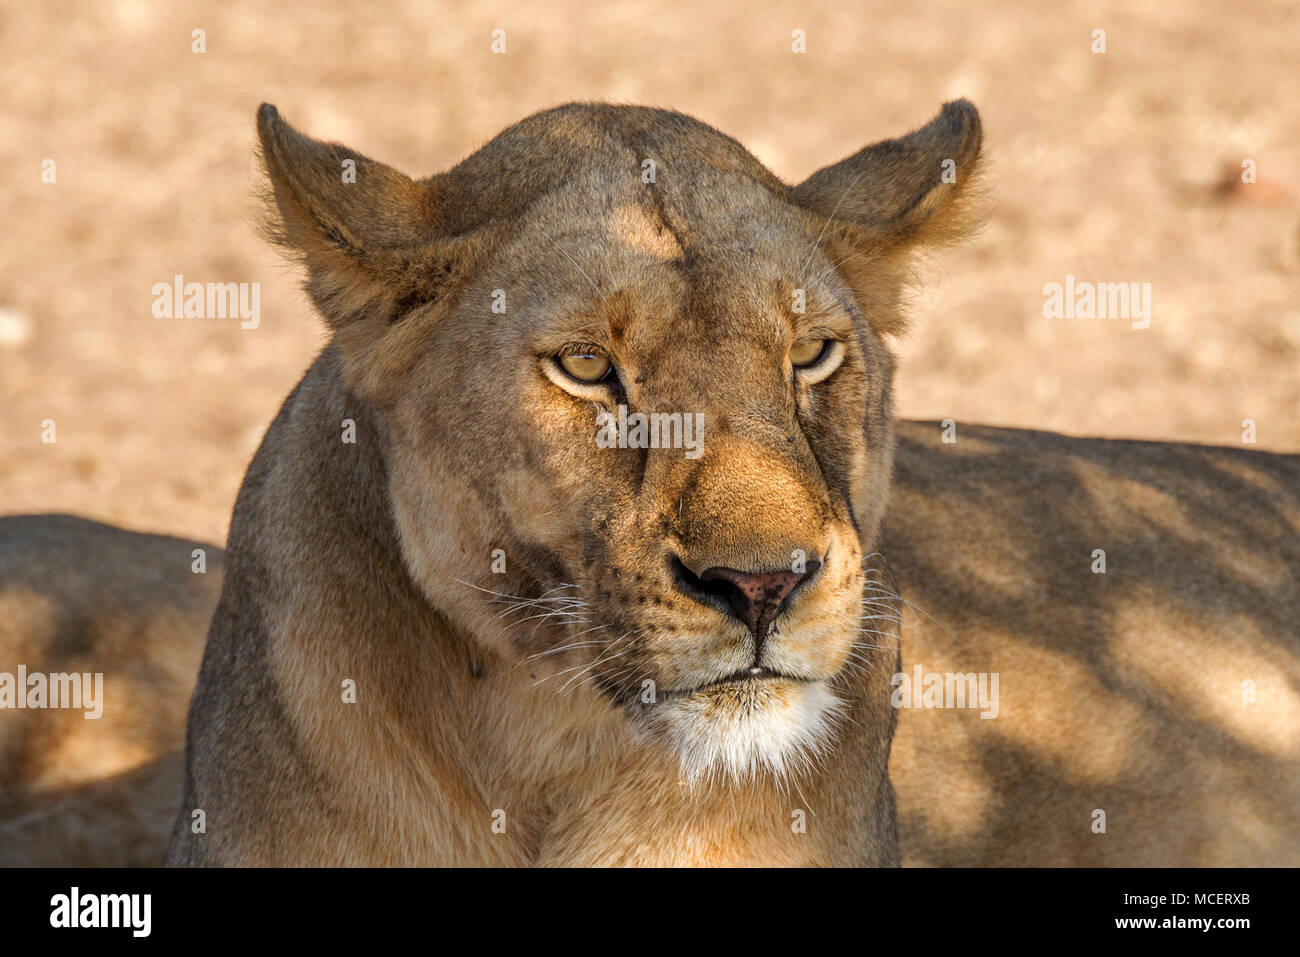 Hembra León (Panthera leo) descansando en la sombra, el Parque nacional Serengeti, Tanzania Foto de stock